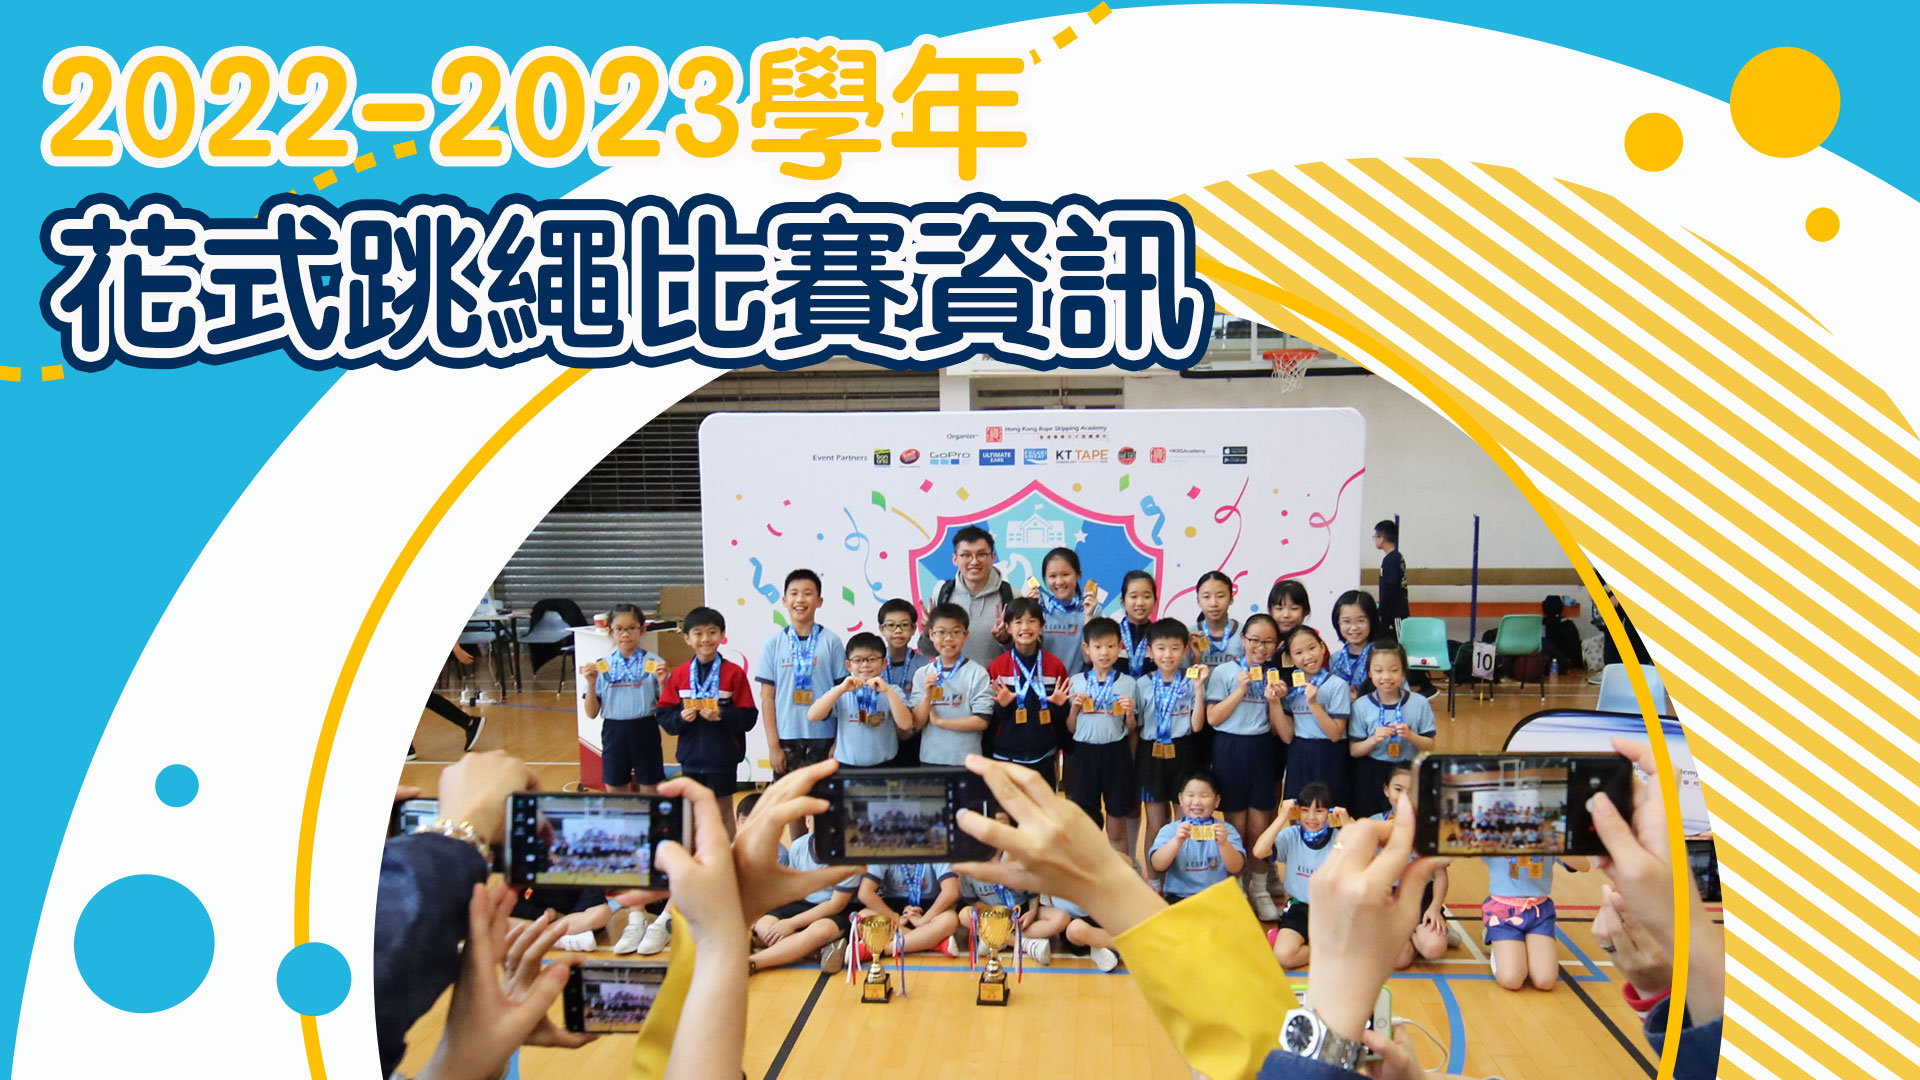 2022-2023-學年花式跳繩比賽資訊